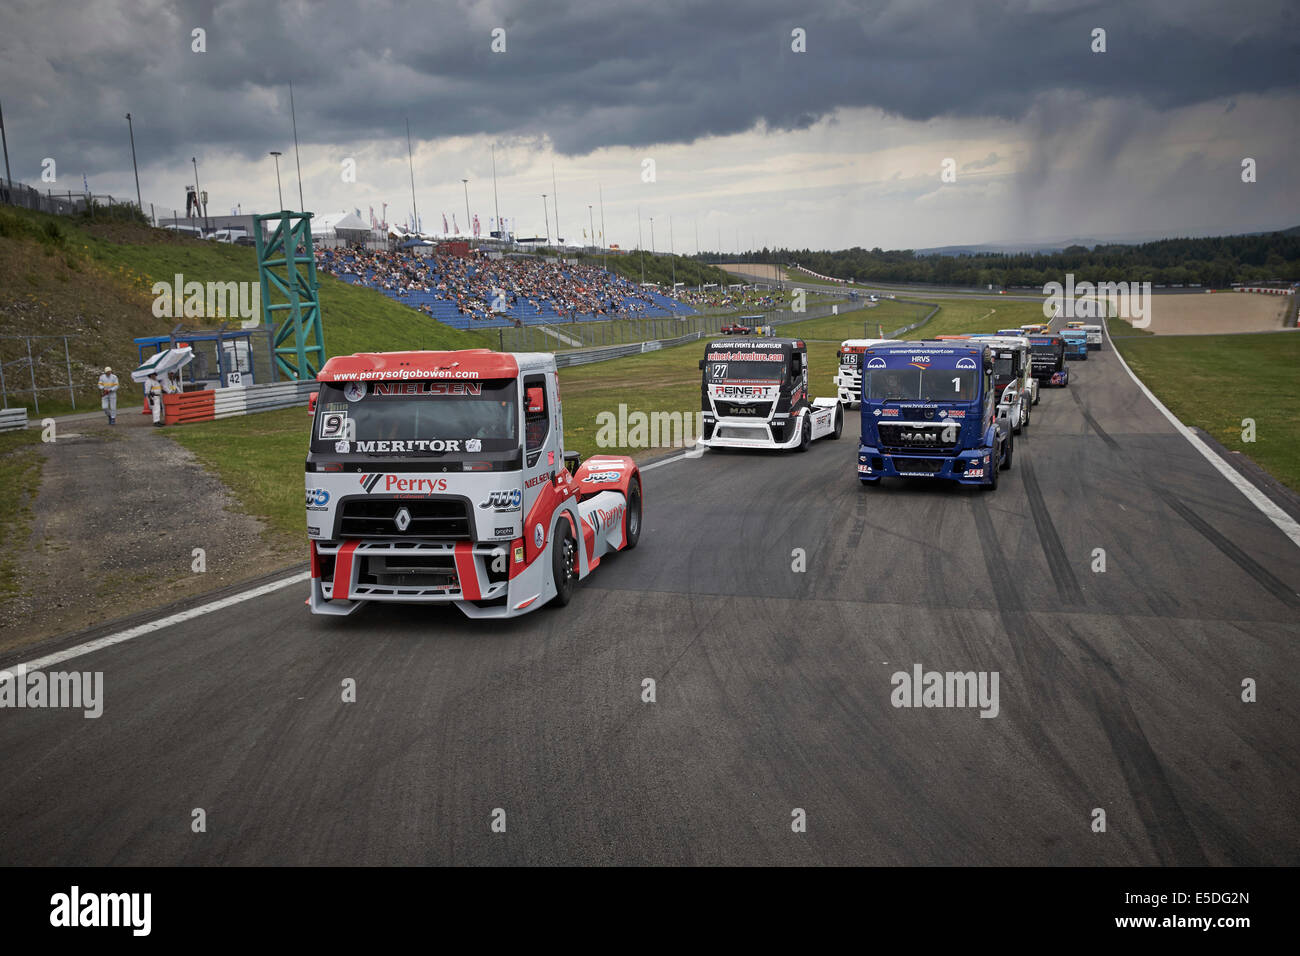 Grand Prix camion de course de Nürburgring, Nürburg, Rhénanie-Palatinat, Allemagne Banque D'Images